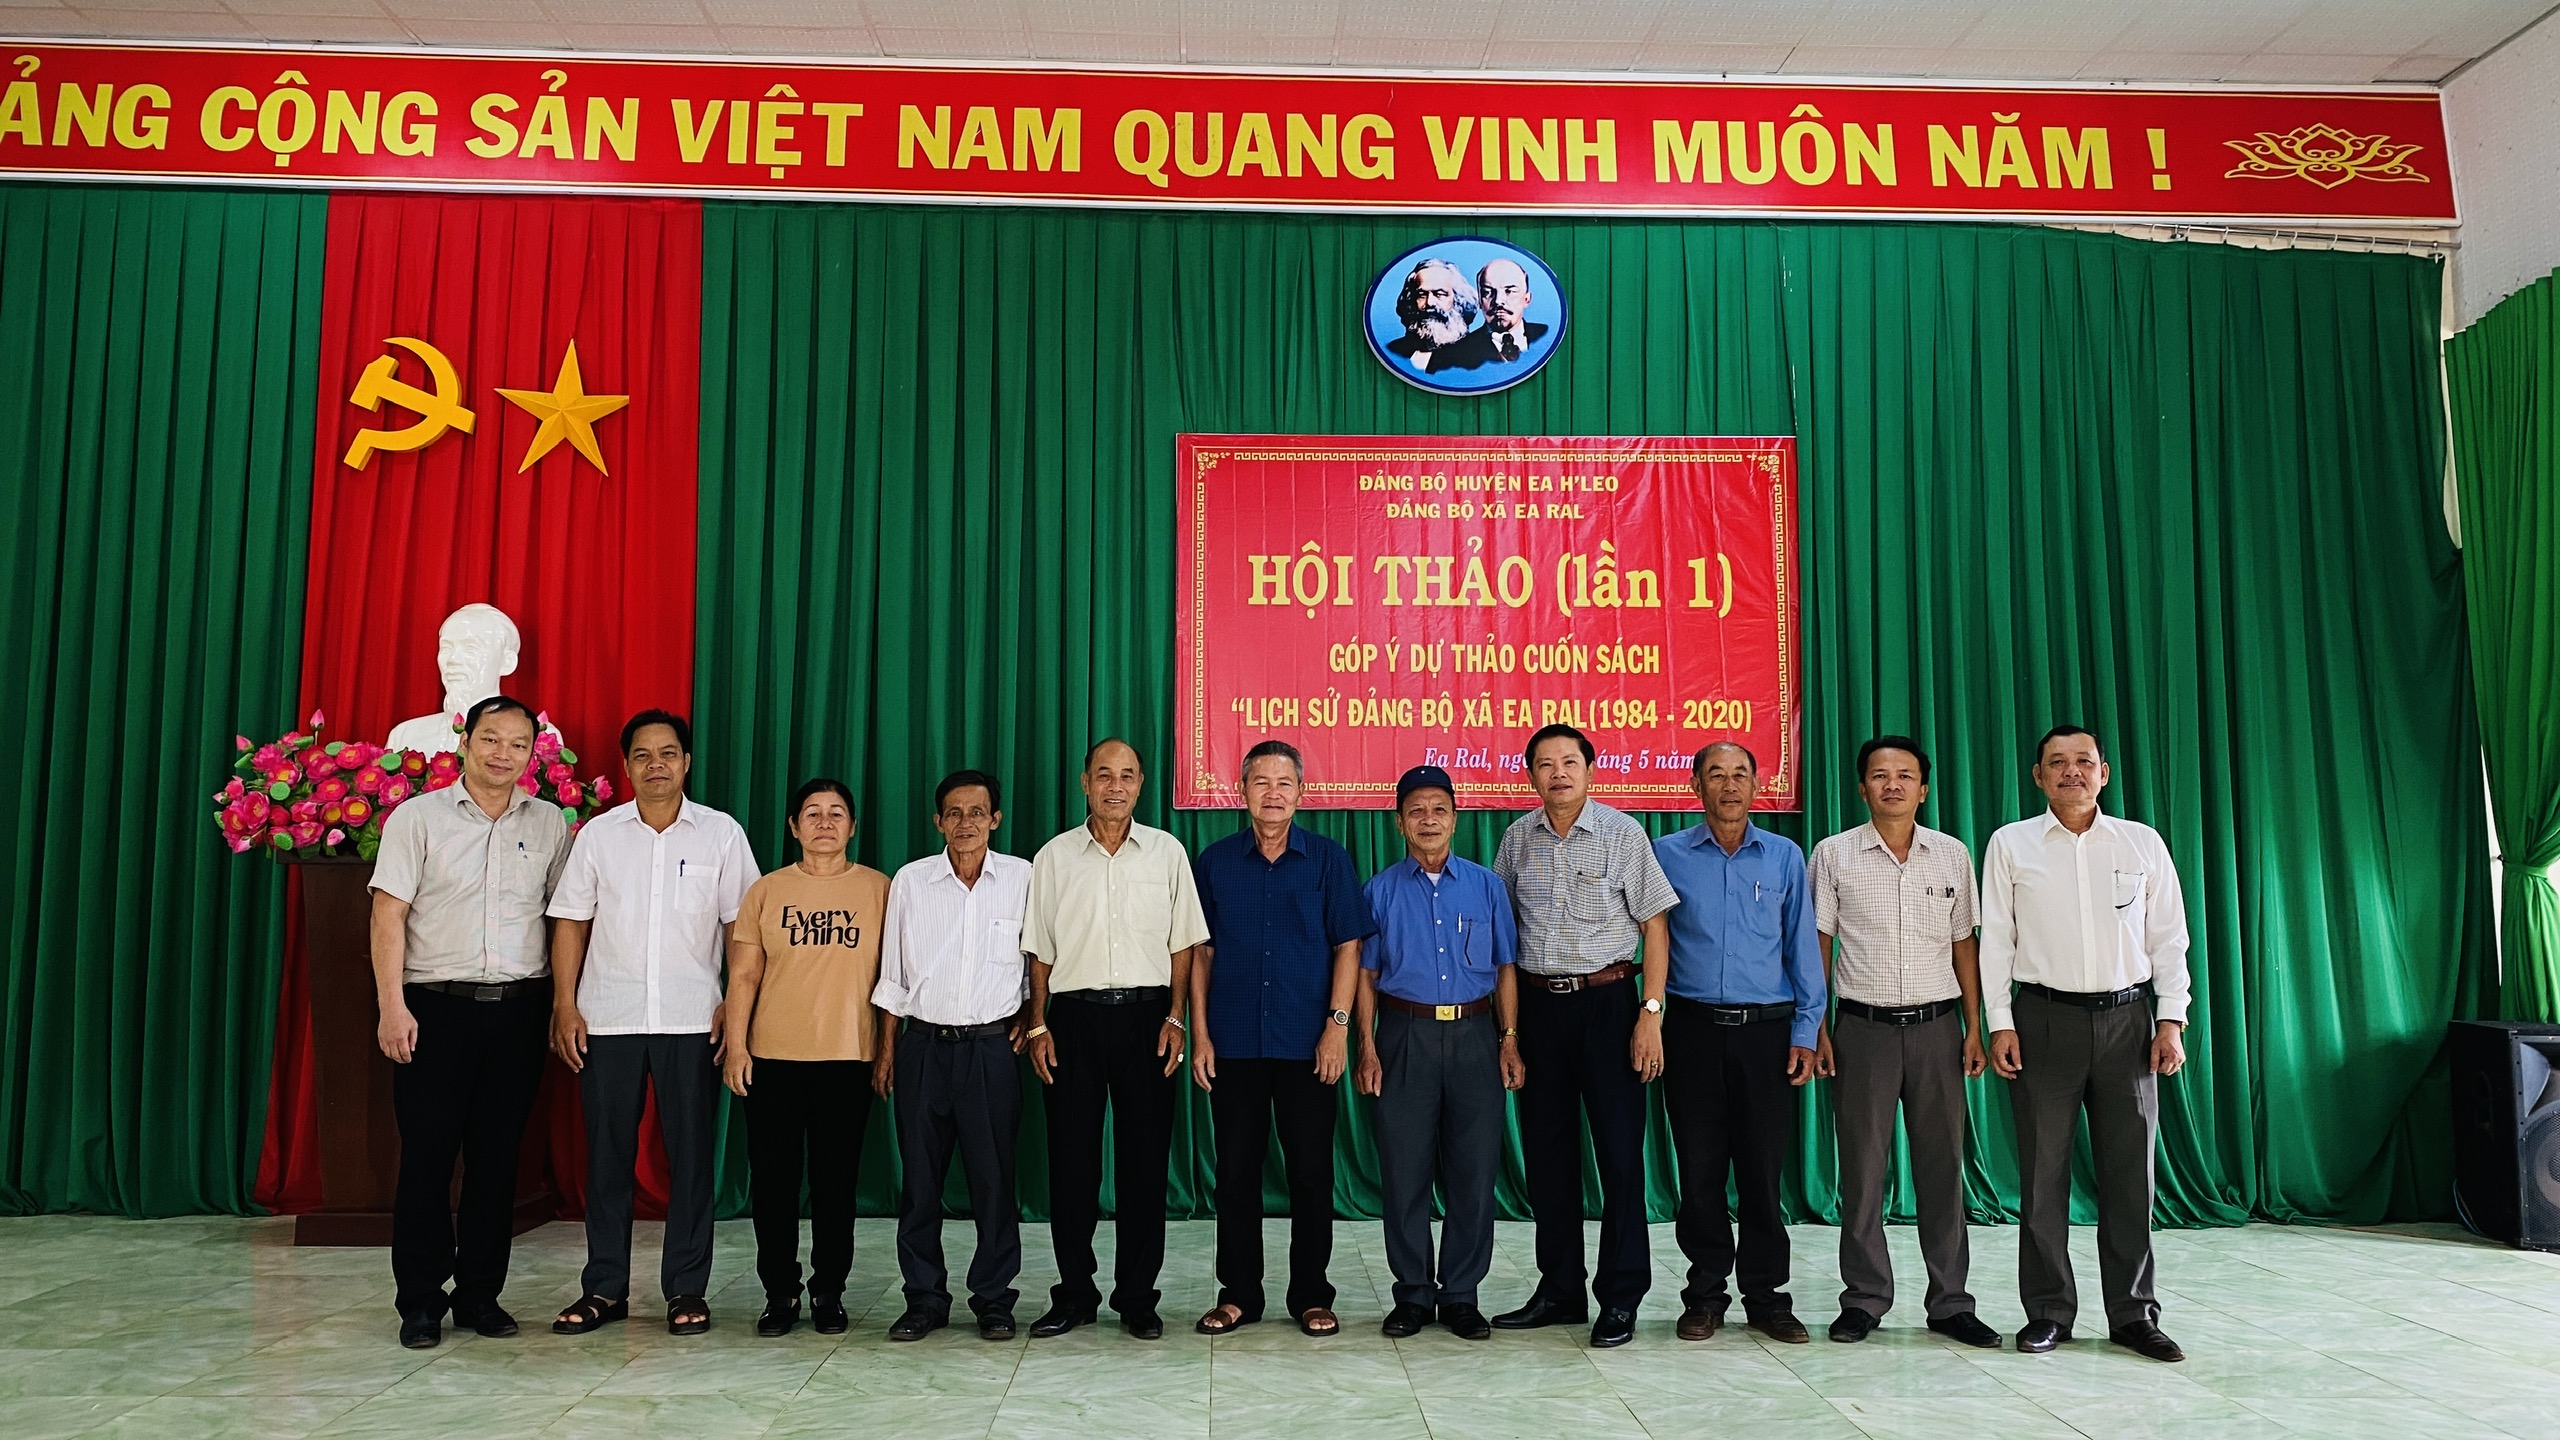 Đảng ủy xã Ea Ral đã tổ chức Hội thảo lần thứ nhất góp ý dự thảo cuốn sách “Lịch sử Đảng bộ xã Ea Ral (1984 – 2020)”